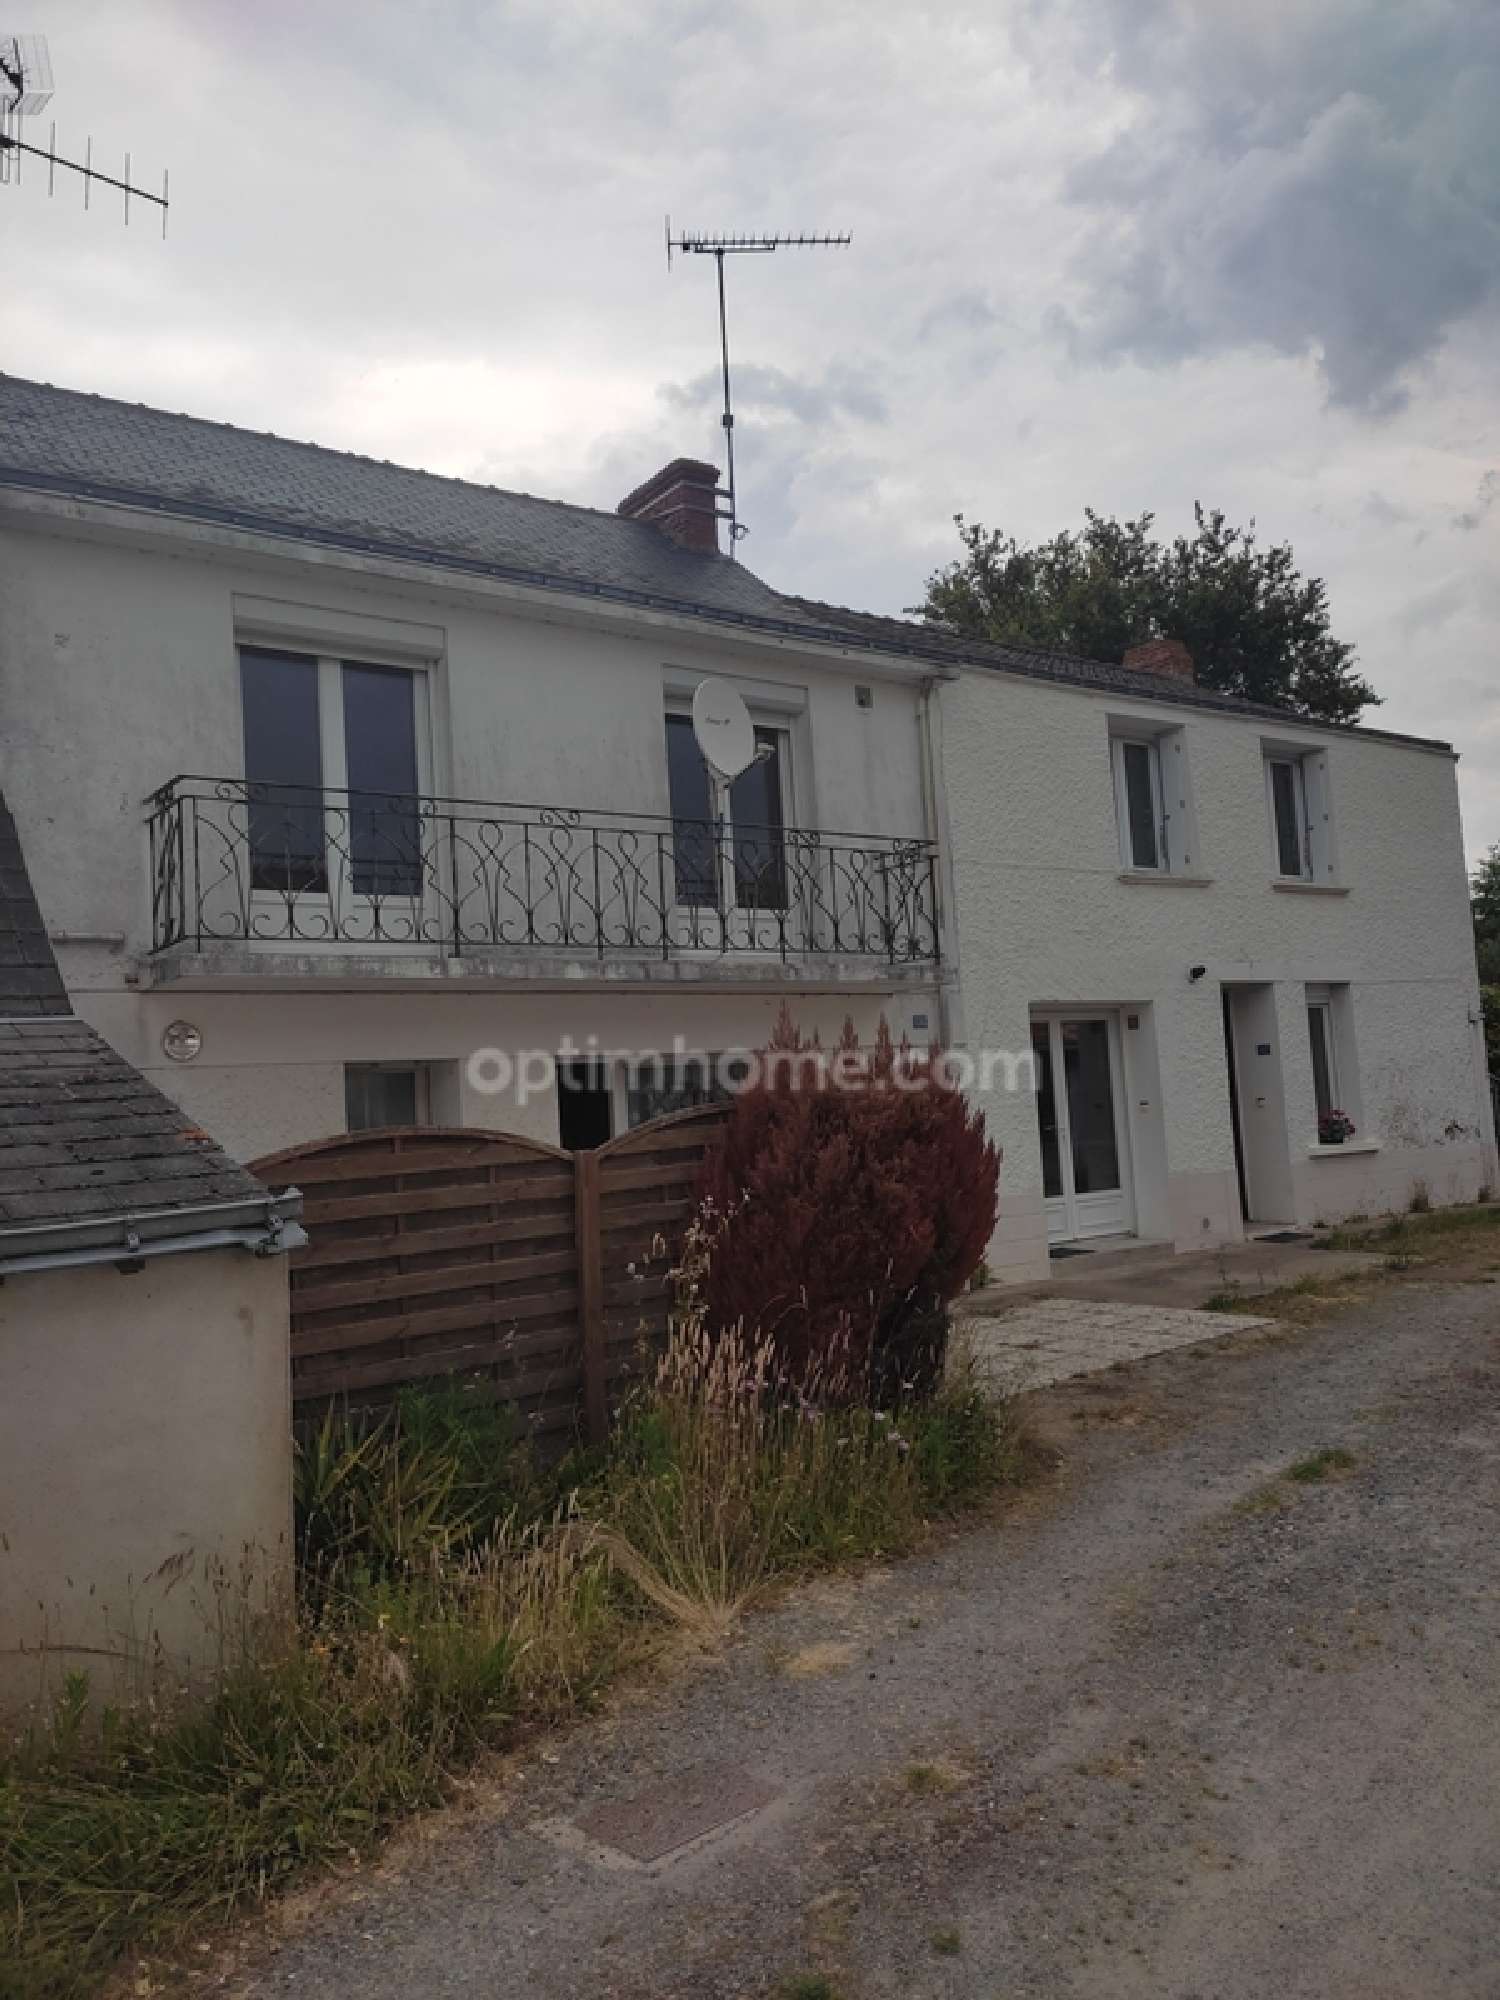  for sale house Saint-Joachim Loire-Atlantique 1